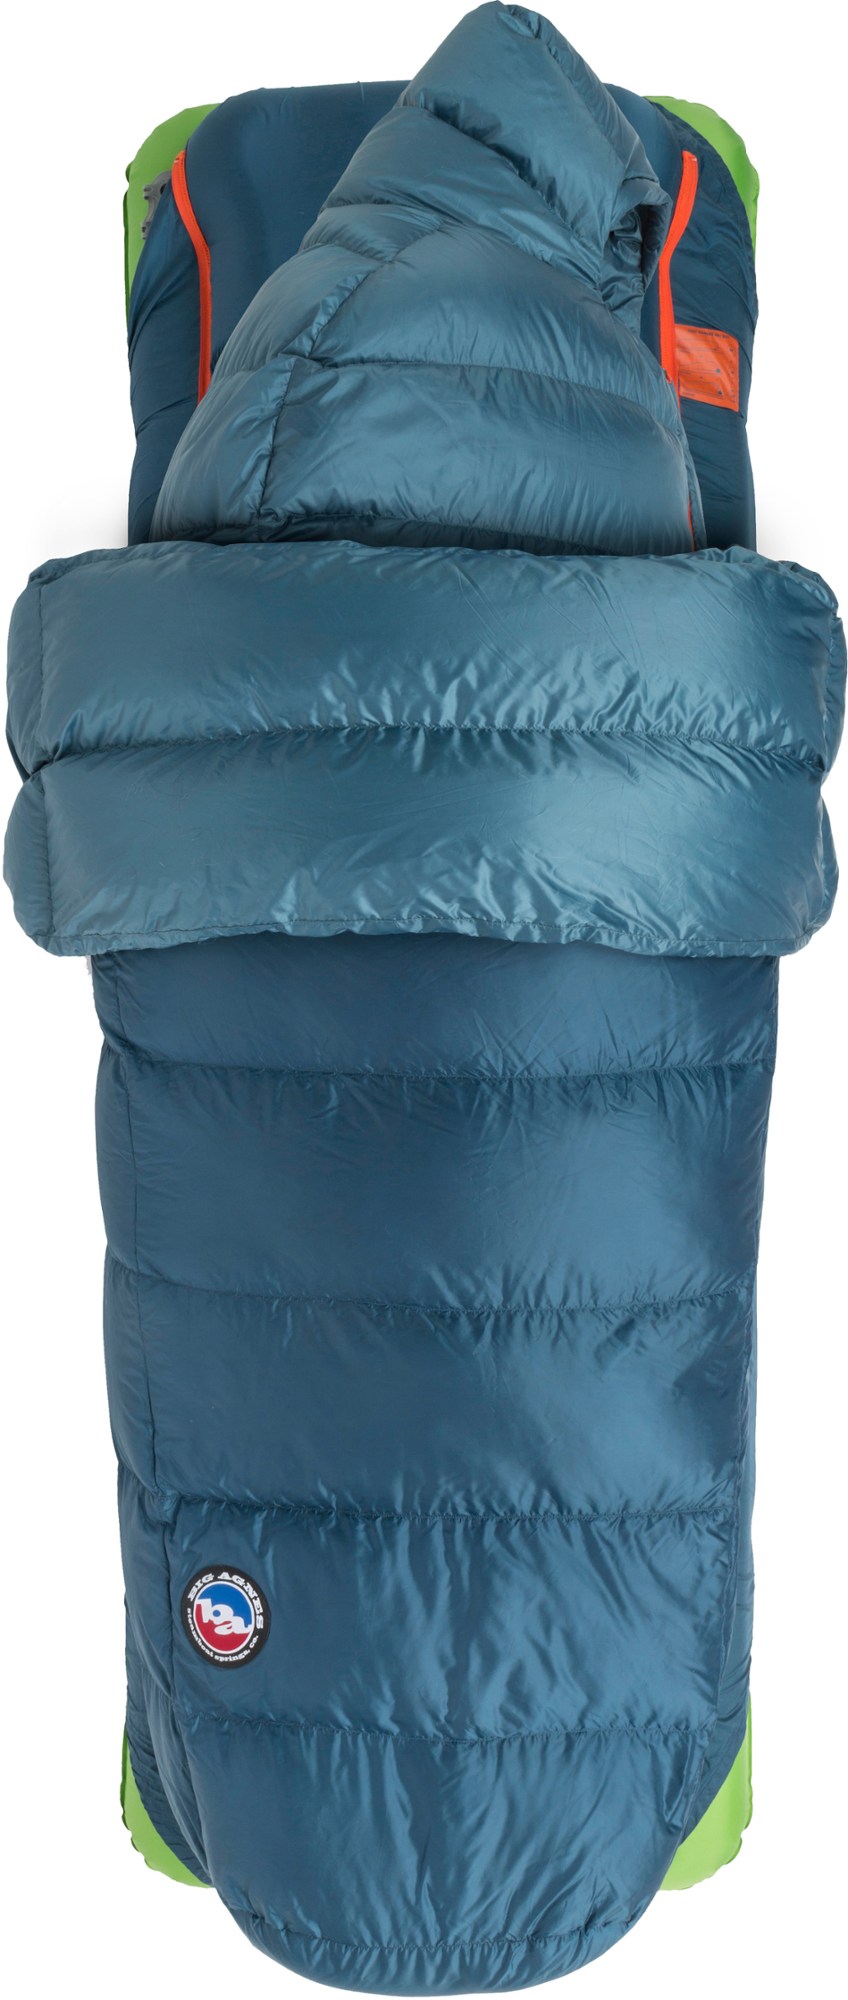 спальный мешок echo park 0 big agnes зеленый Спальный мешок Lost Ranger 3N1 15 - мужской Big Agnes, синий